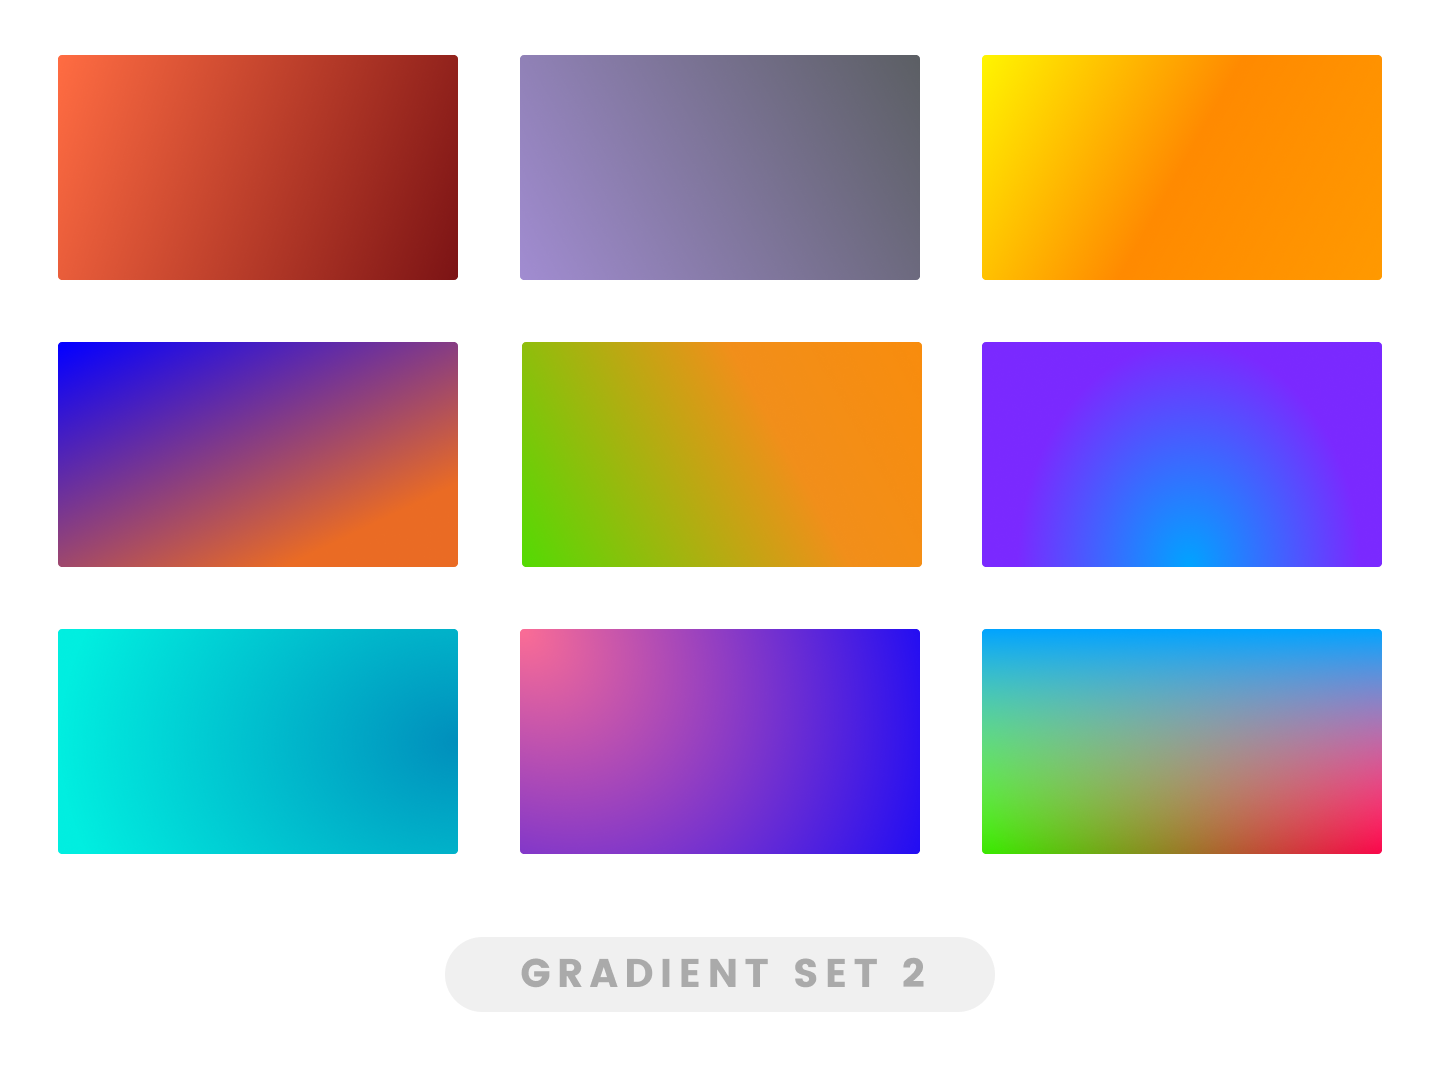 Bộ gradient set đa dạng và đẹp mắt sẽ làm bạn say mê ngay từ cái nhìn đầu tiên, đừng bỏ lỡ cơ hội khám phá chi tiết các hình ảnh liên quan.